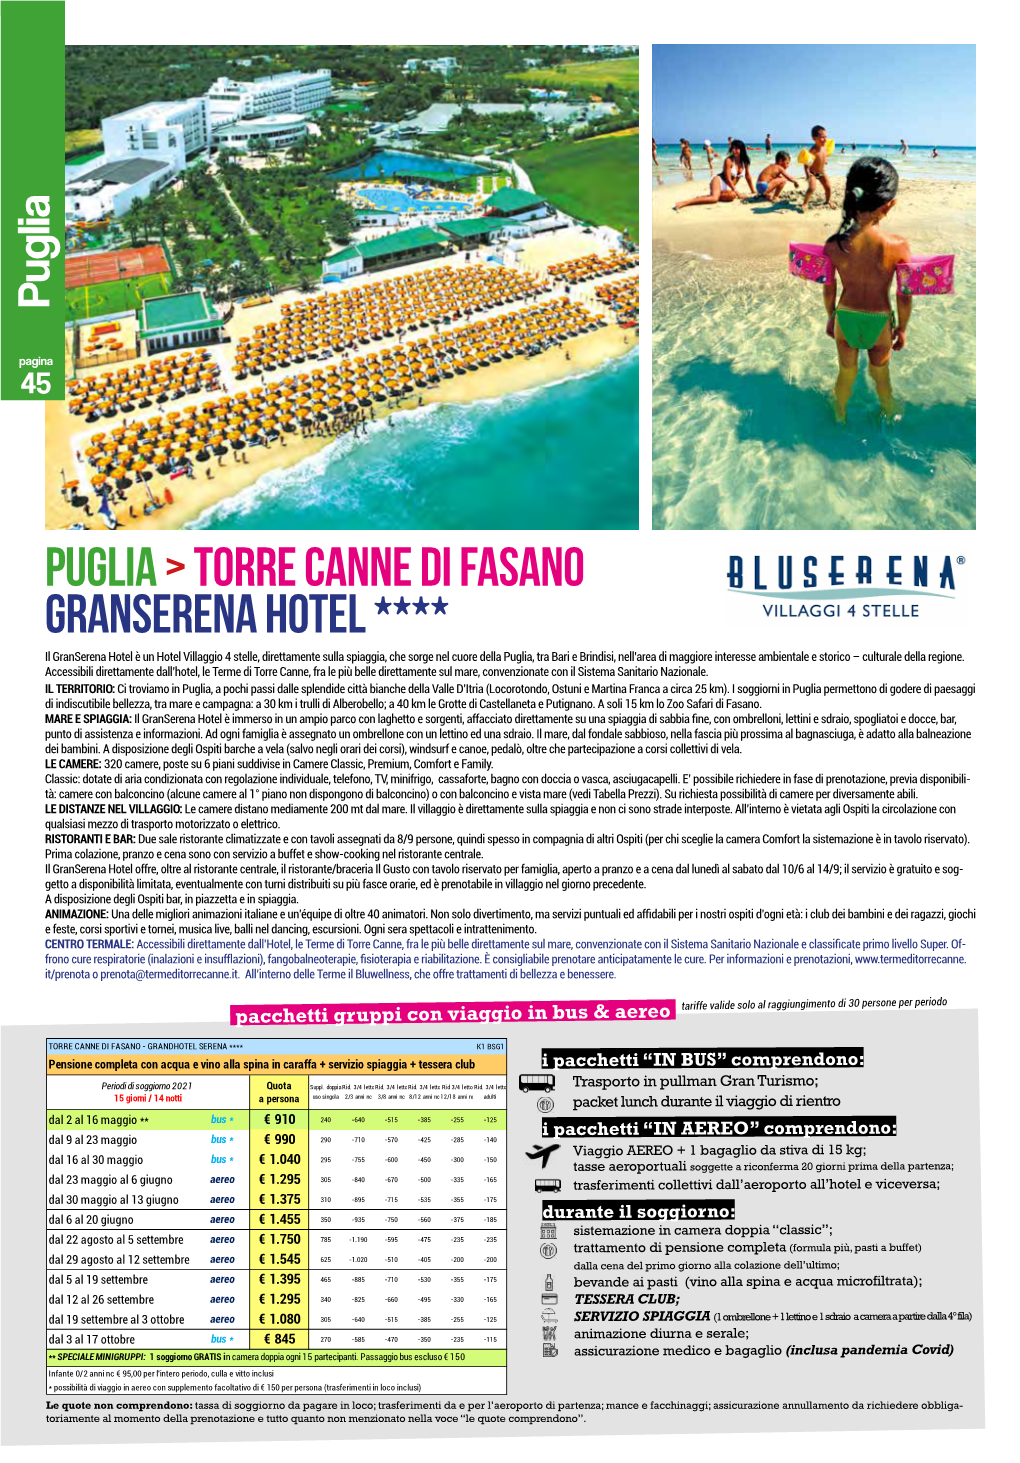 Puglia&gt;TORRE CANNE Di Fasano GRANSERENA Hotel ****